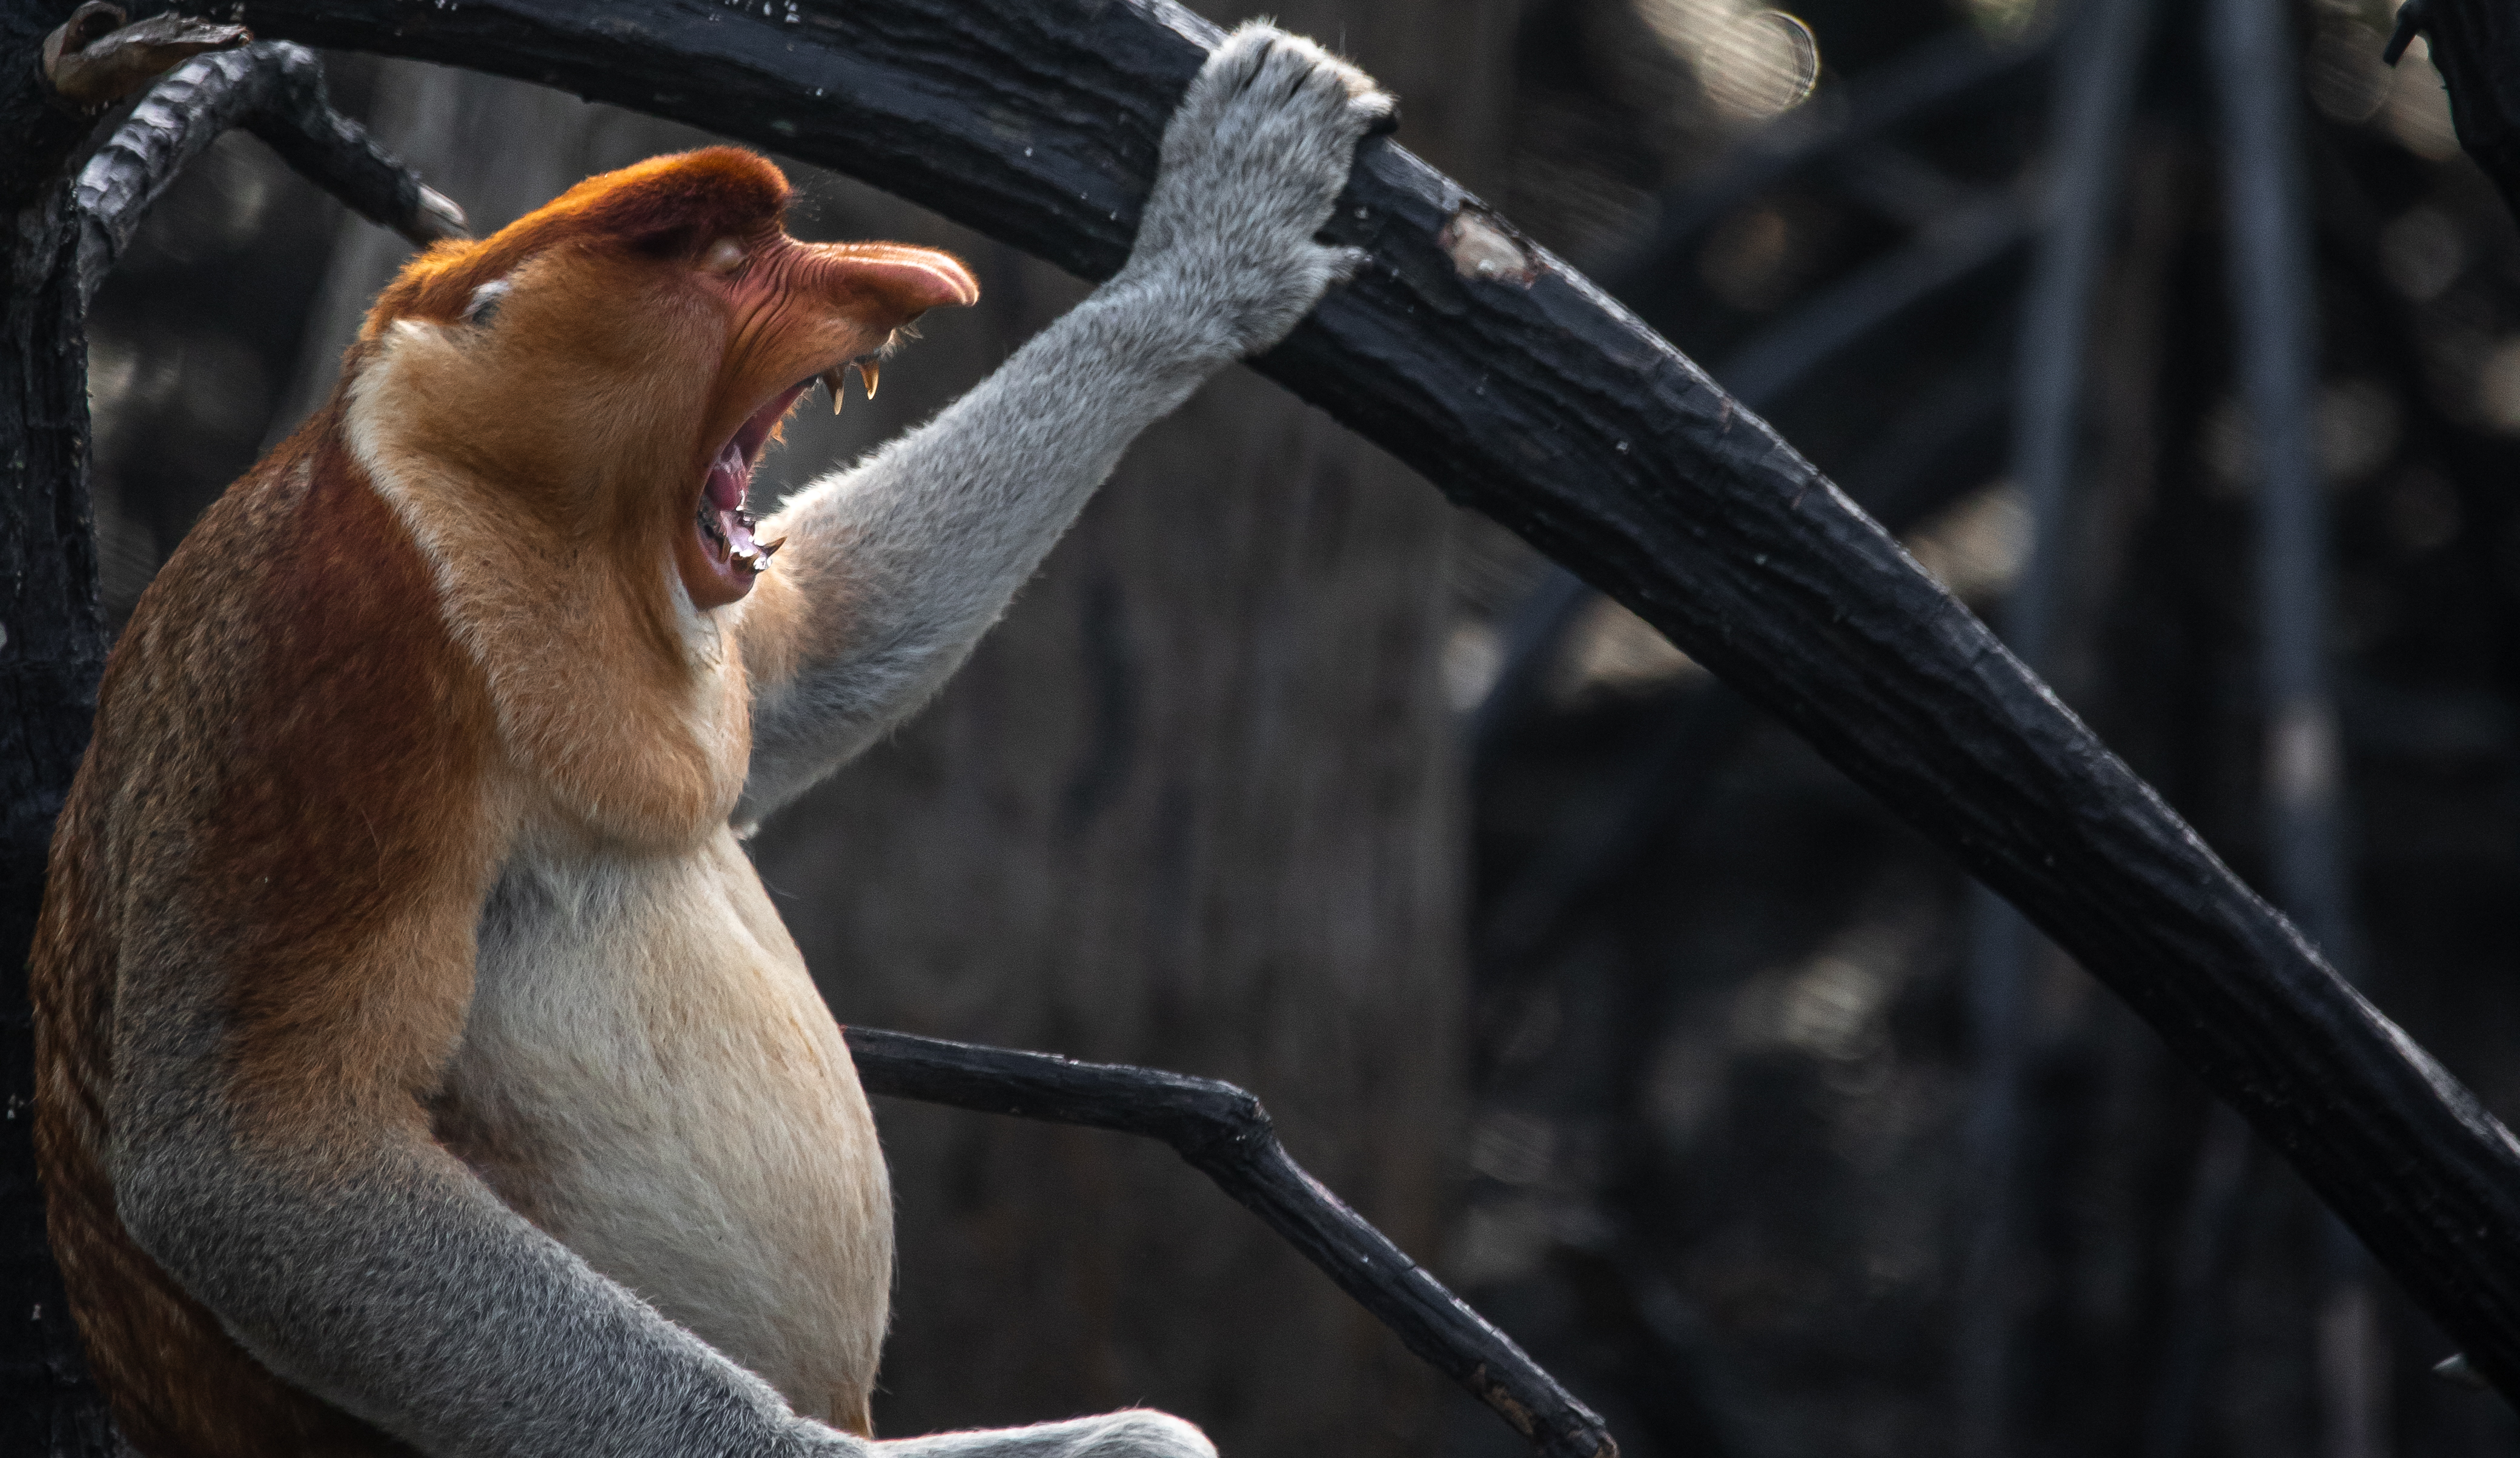 Proboscis Monkey - The Helping Hand